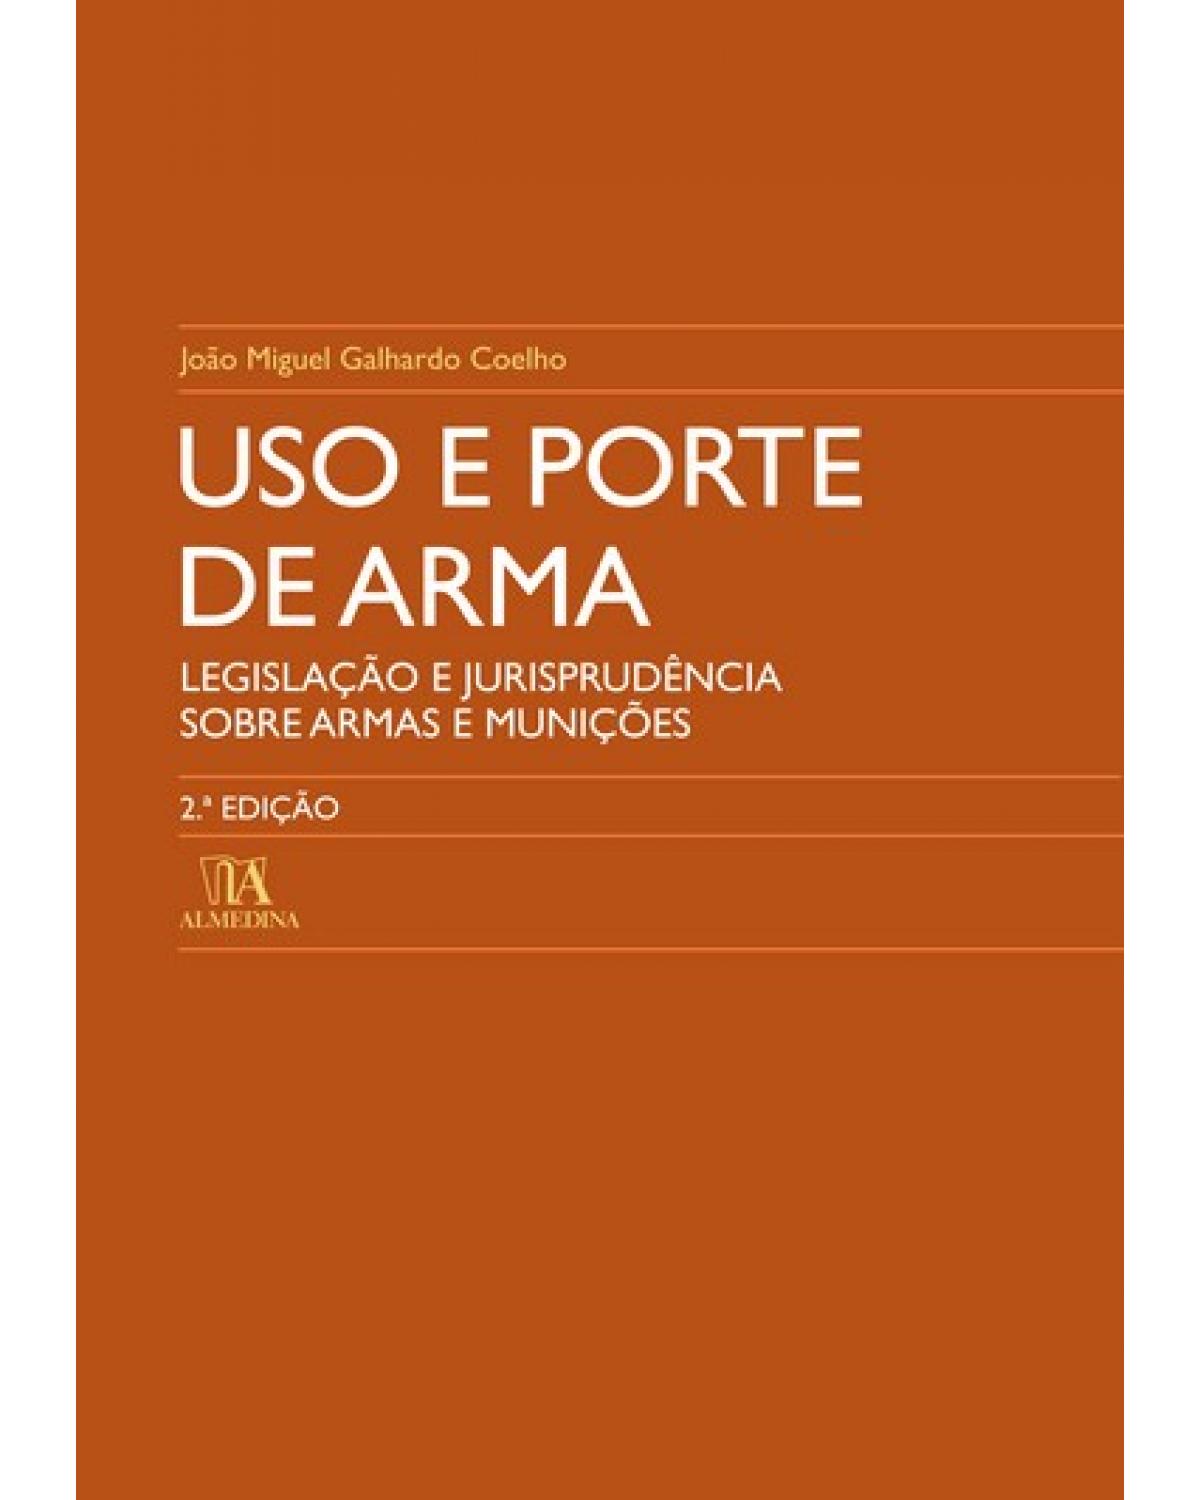 Uso e porte de arma - legislação e jurisprudência sobre armas e munições - 2ª Edição | 2007